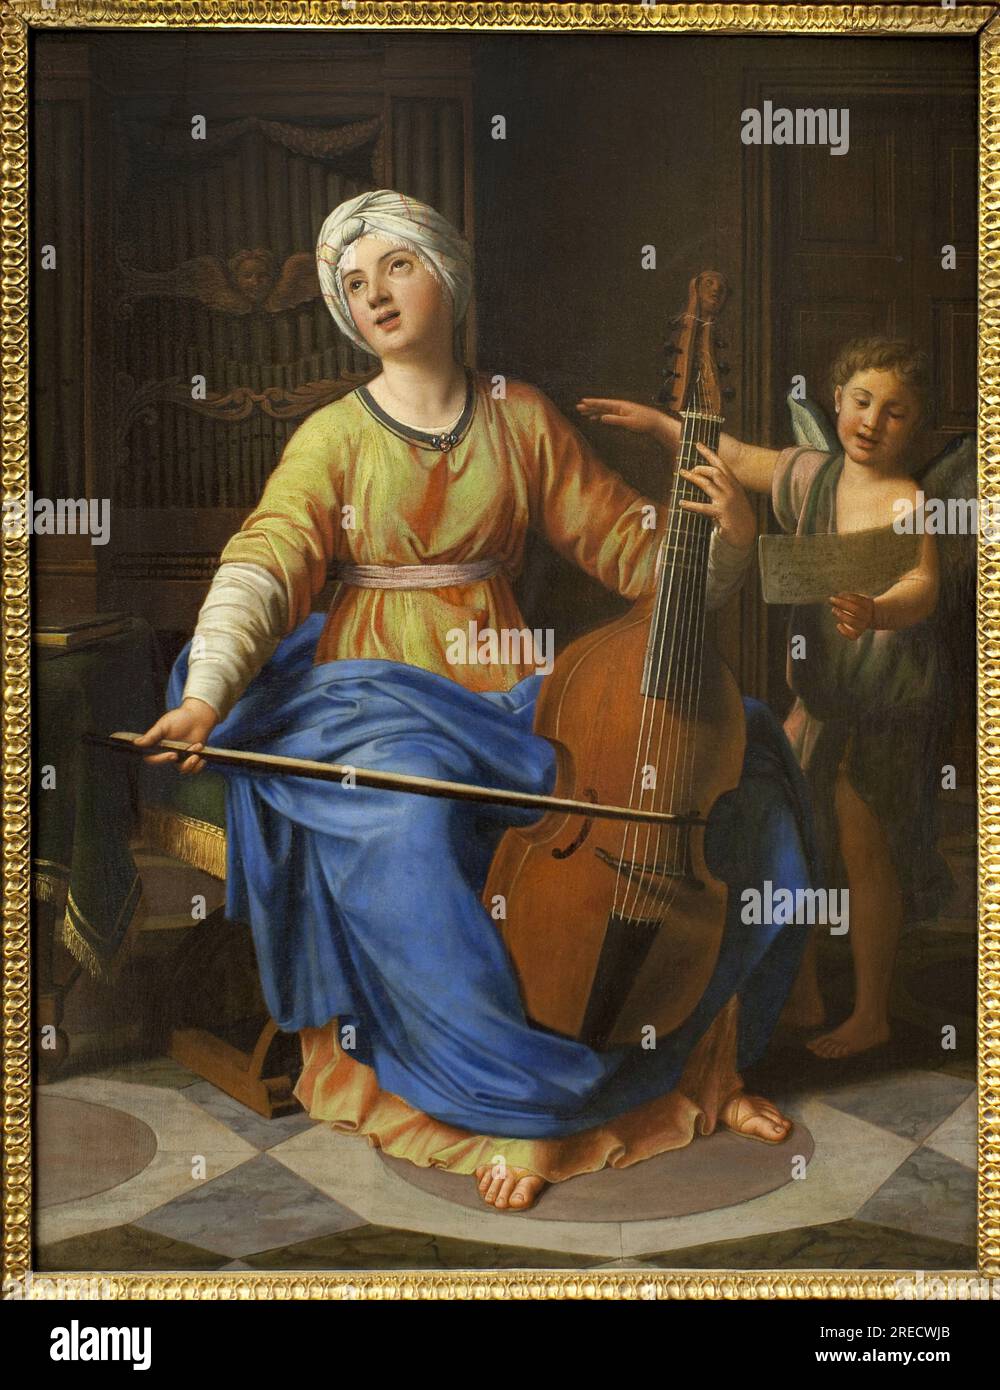 Sainte Cecile. Peinture de Nicolas Colombel (1646-1717), Huile sur bois. Art francais 17e-18e Siecle. Musée des Beaux Arts de Rouen. Stockfoto